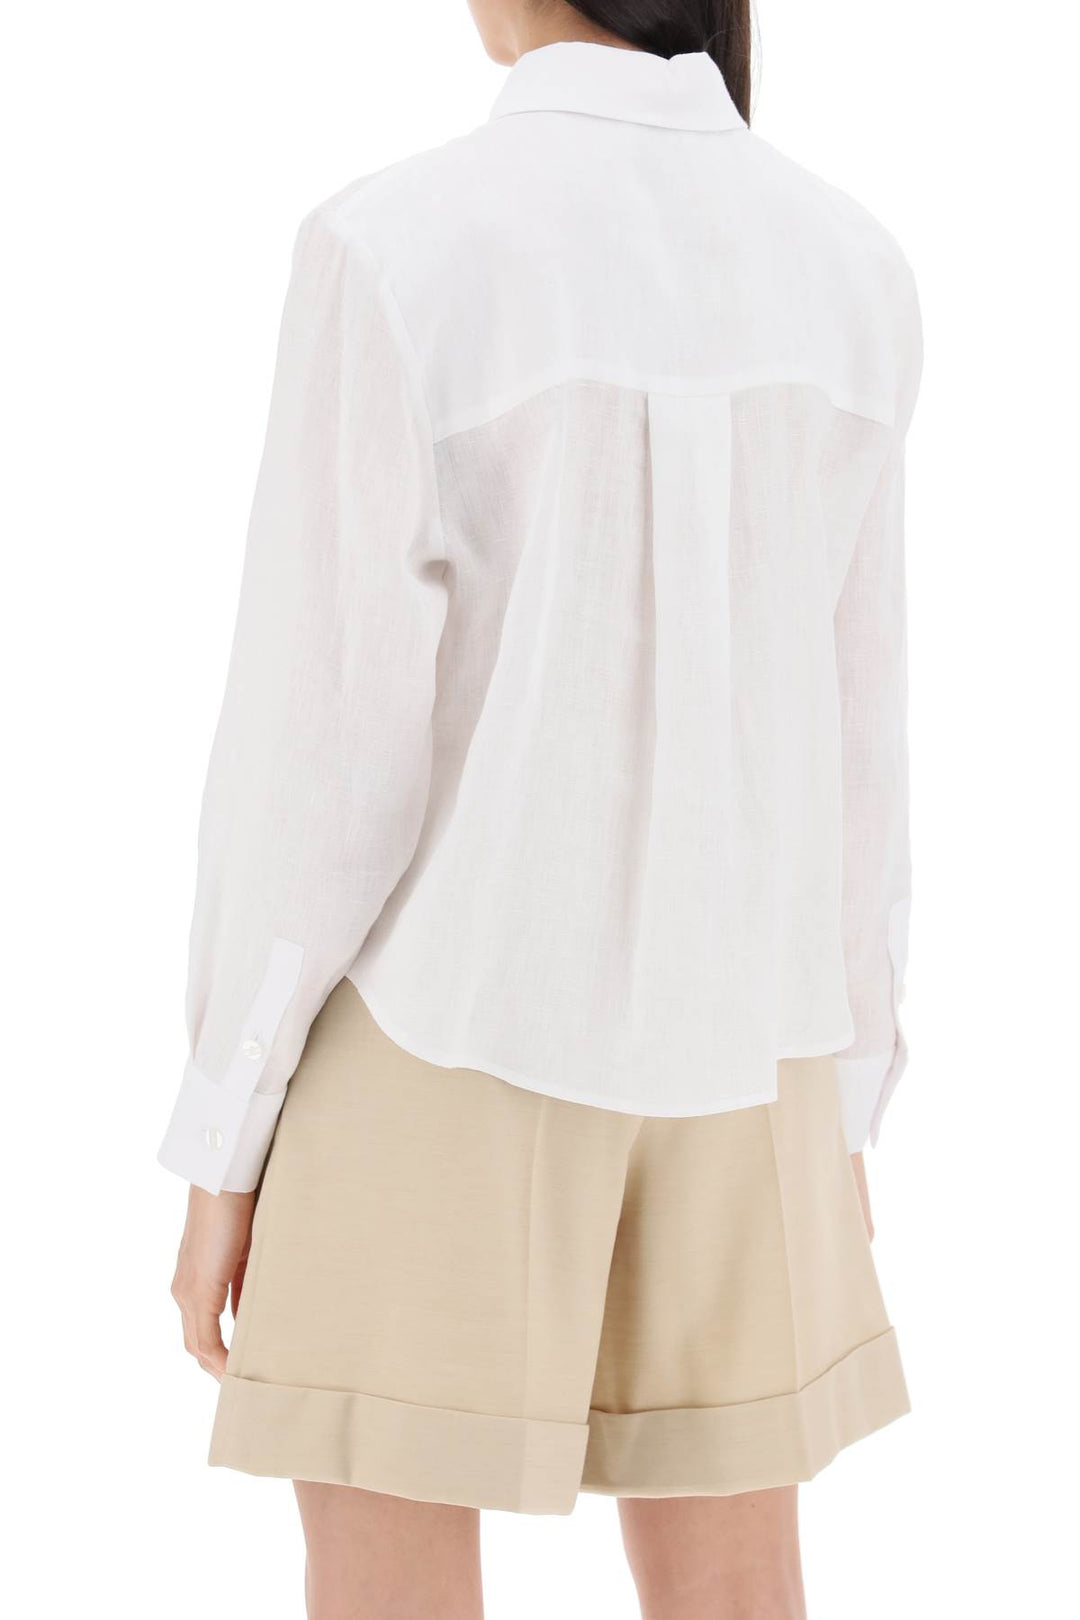 Mvp Wardrobe St Raphael Linen Shirt For Men   Bianco